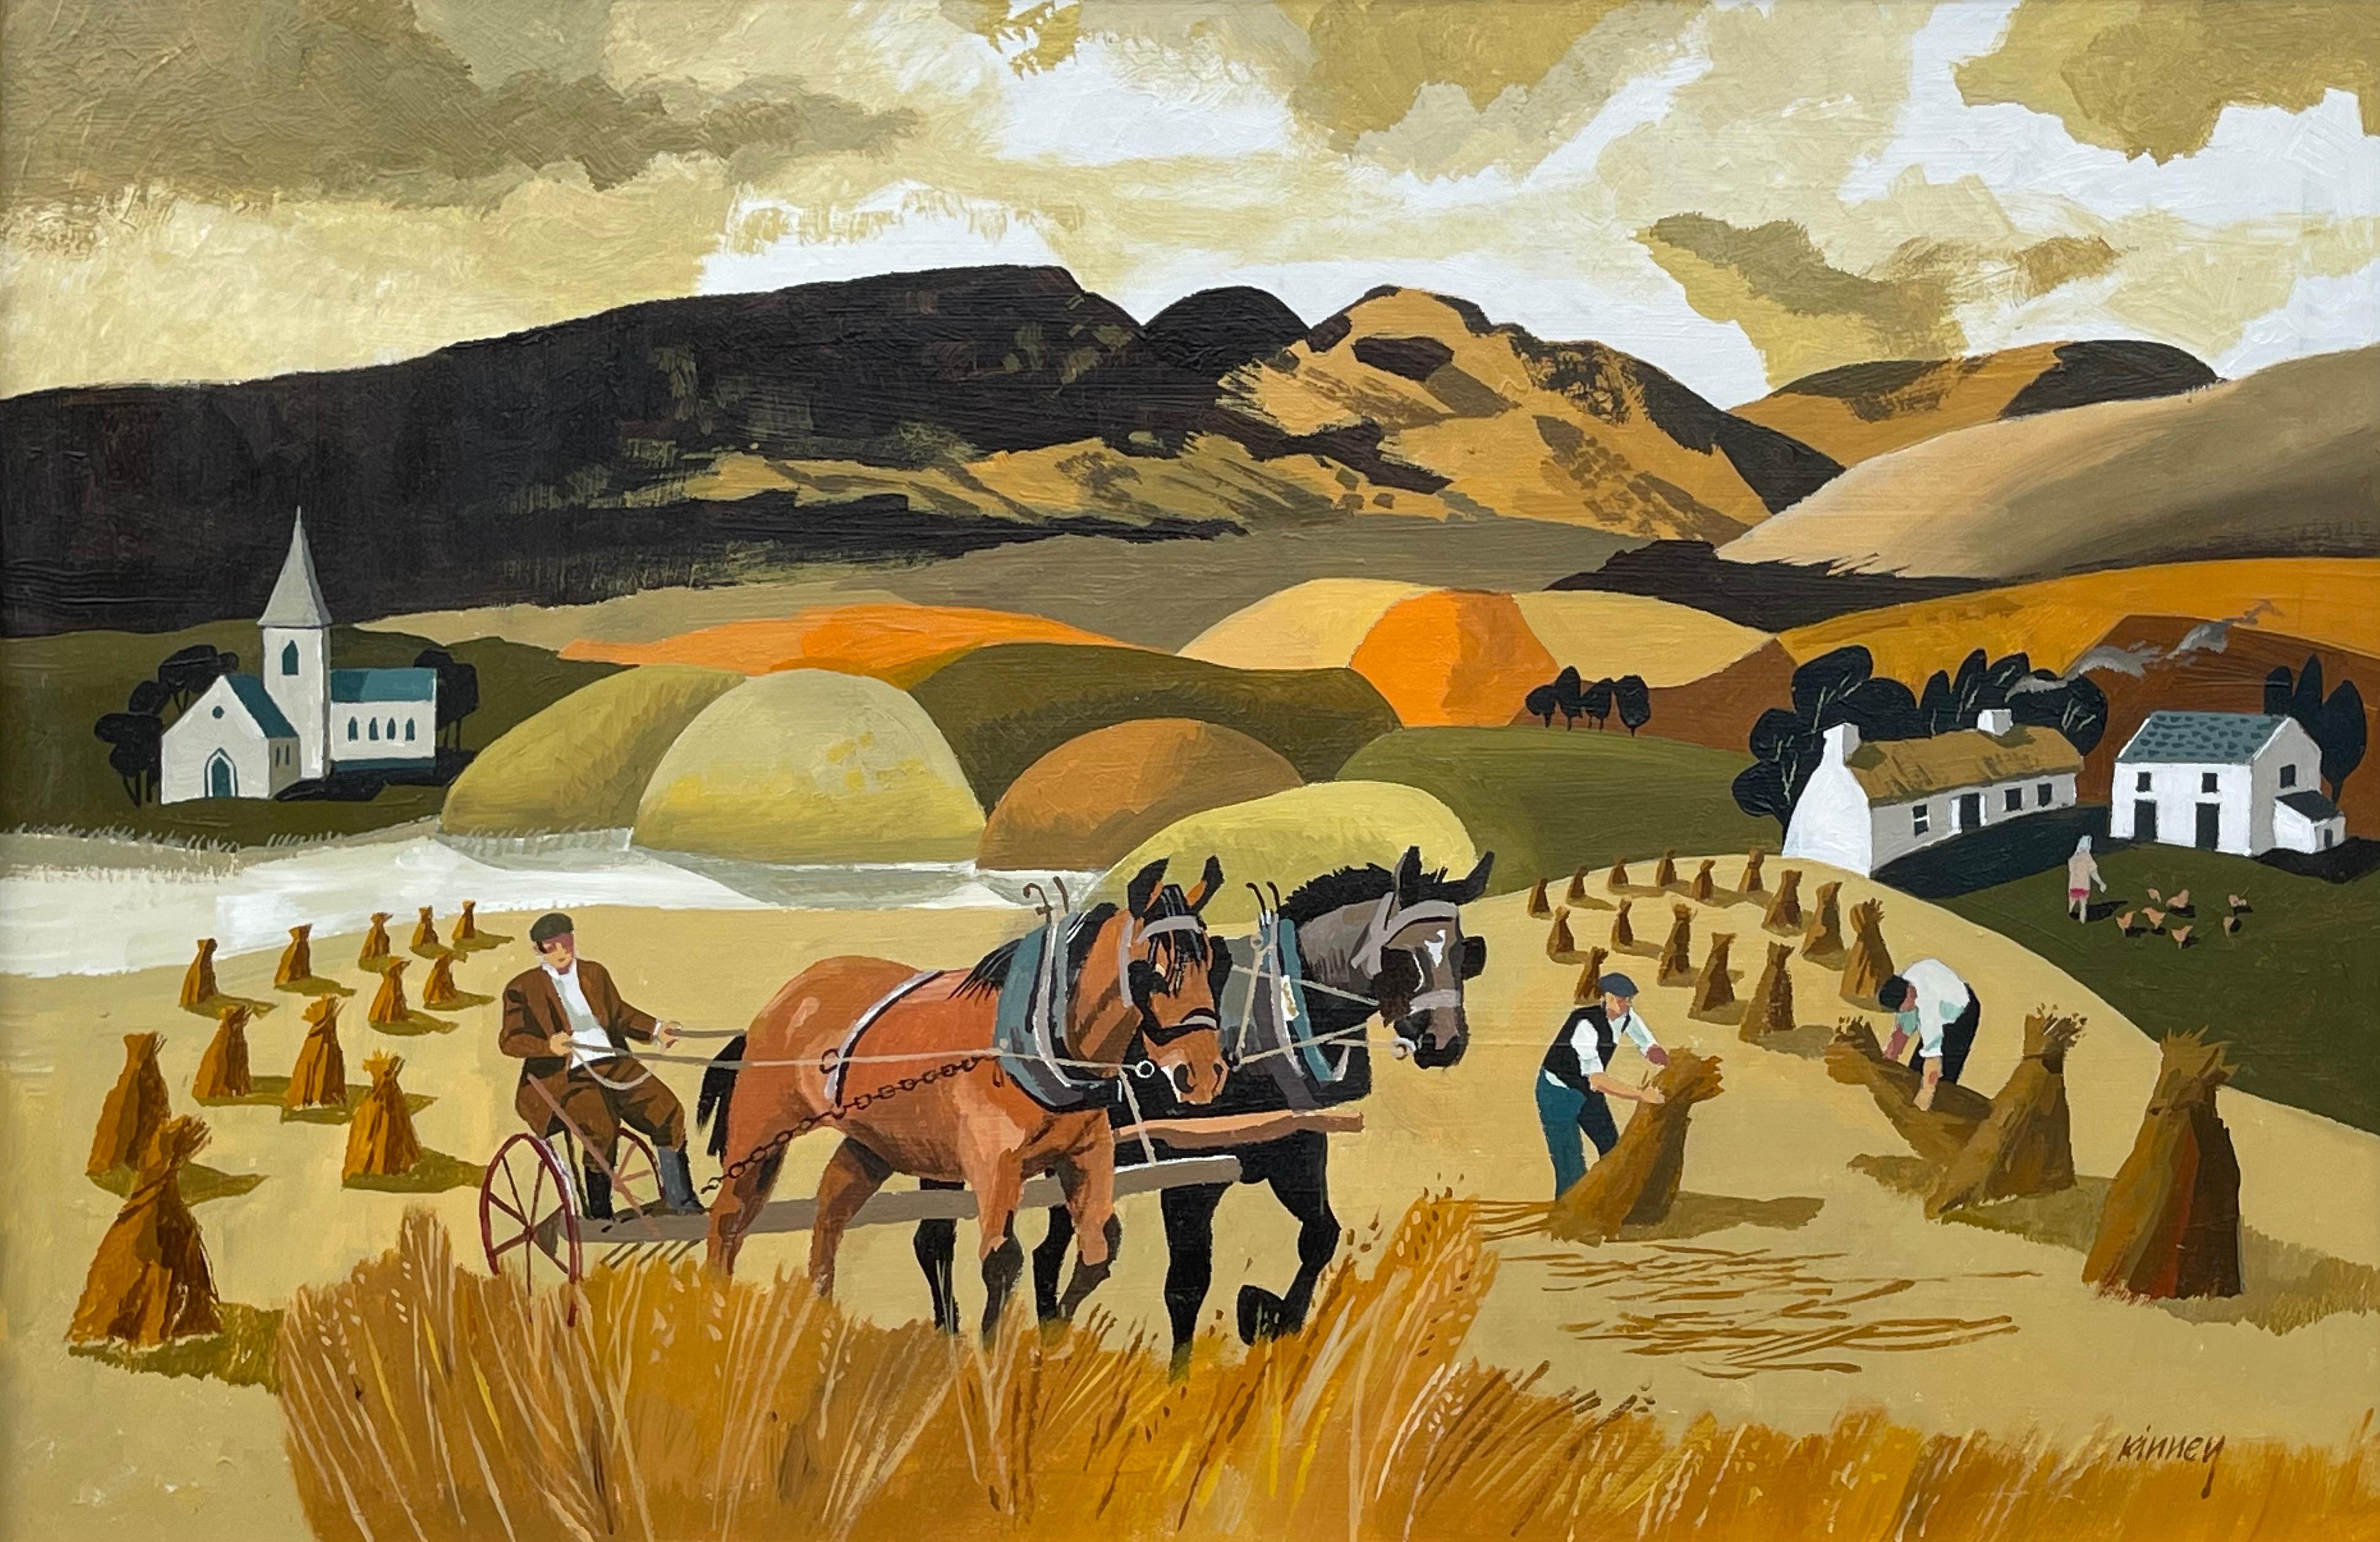 Paysage abstrait de chevaux dans un champ de maïs aux couleurs chaudes de l'artiste irlandais moderne Desmond Kinney 

L'œuvre d'art mesure 18 x 12 pouces 
Le cadre mesure 26 x 20 pouces

Desmond Kinney est né à Portstewart en 1934. Il a fréquenté